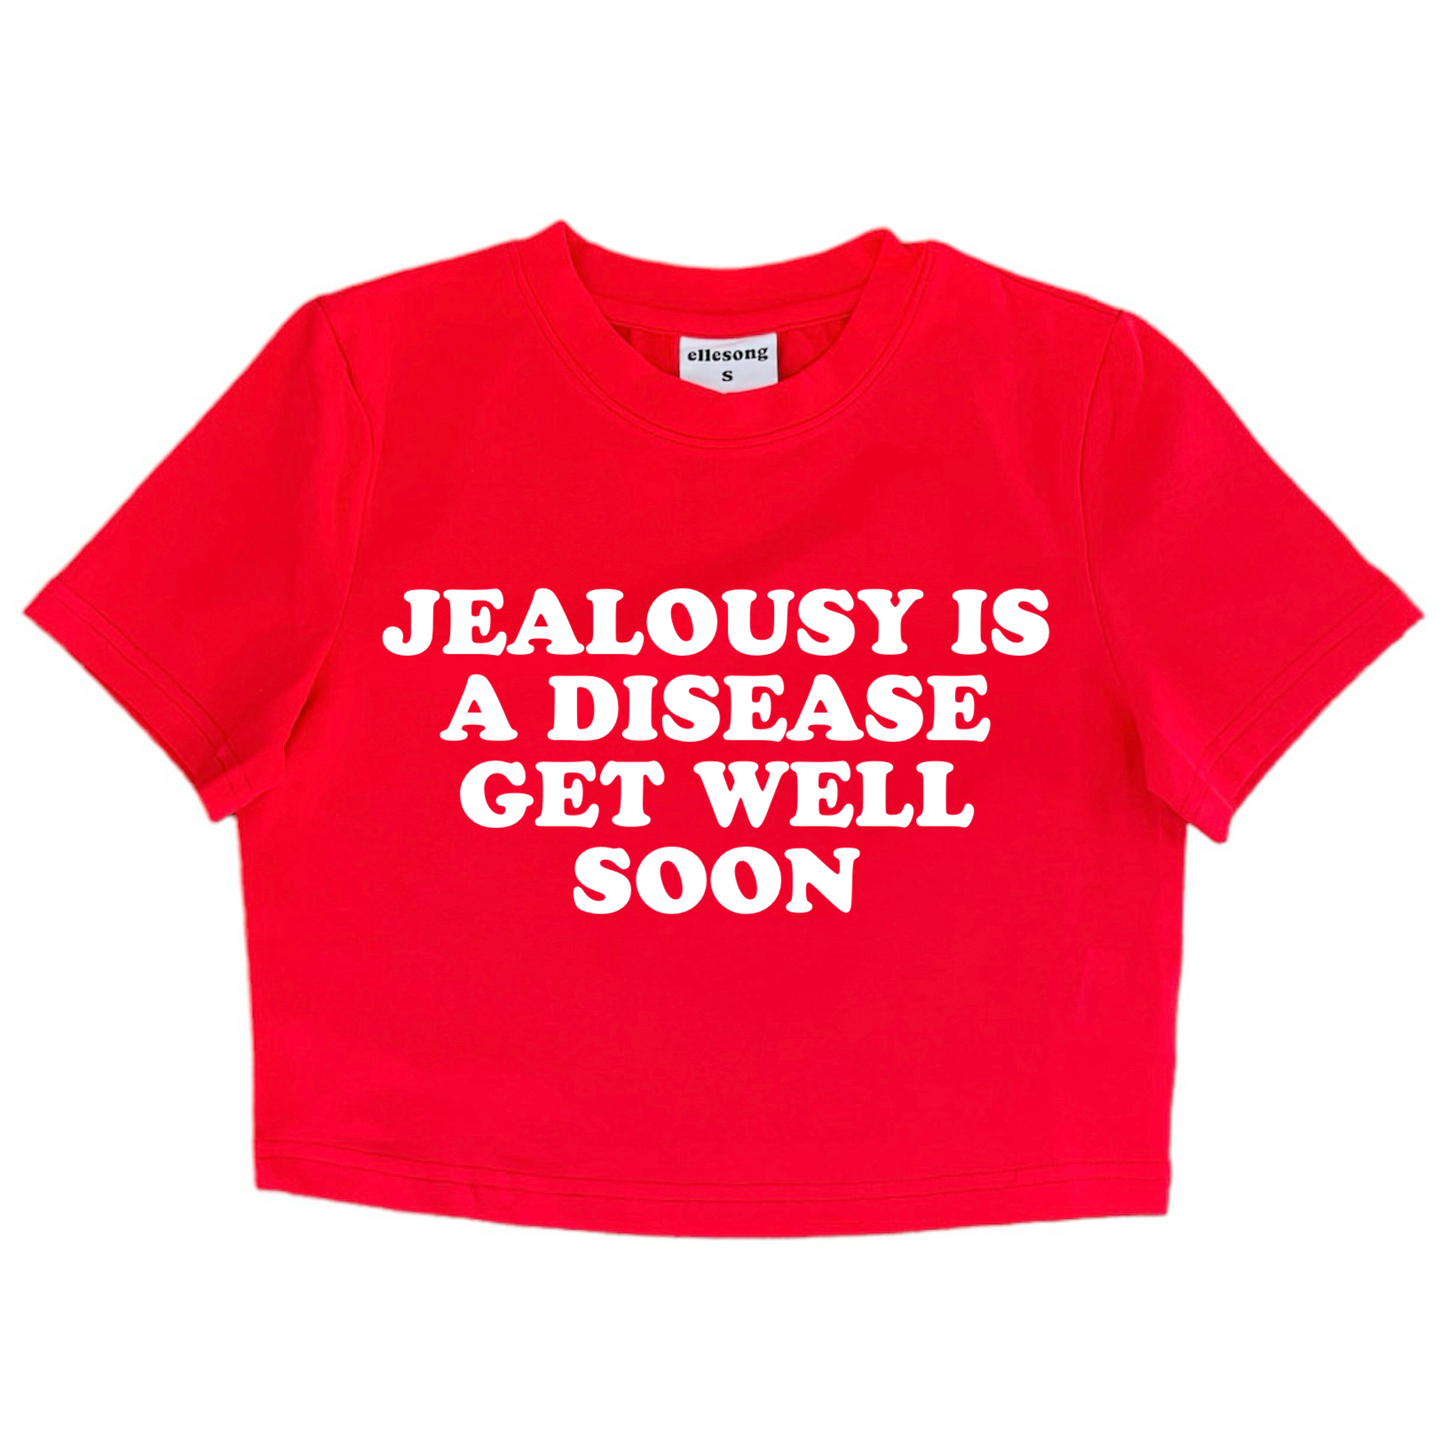 Jealousy Is A Disease Get Well Soon Baby Tee